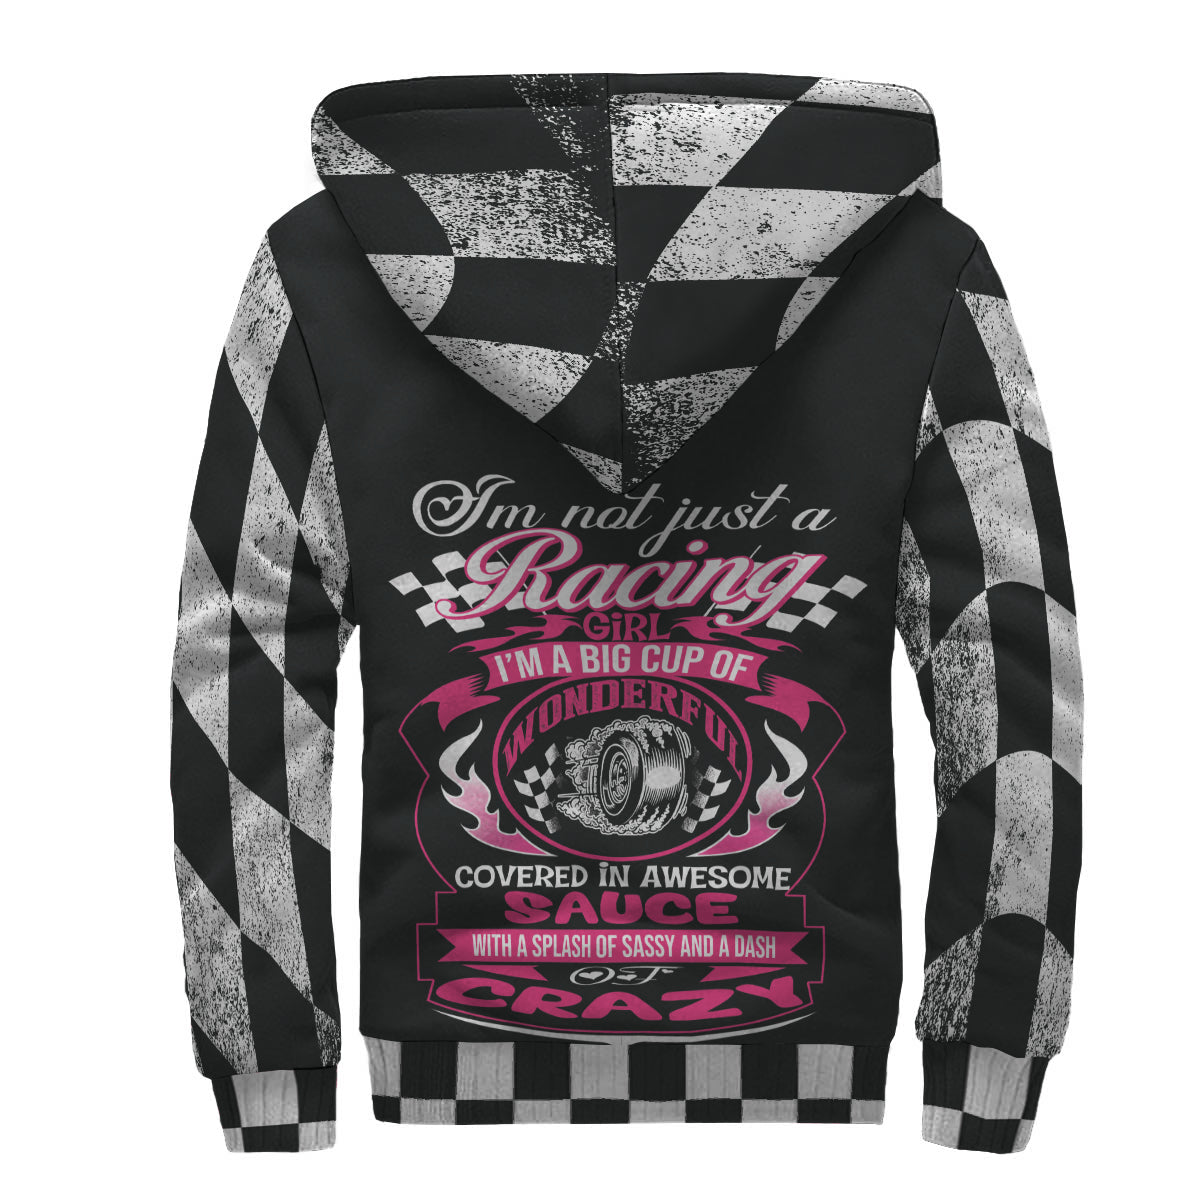 Racing girl jacket